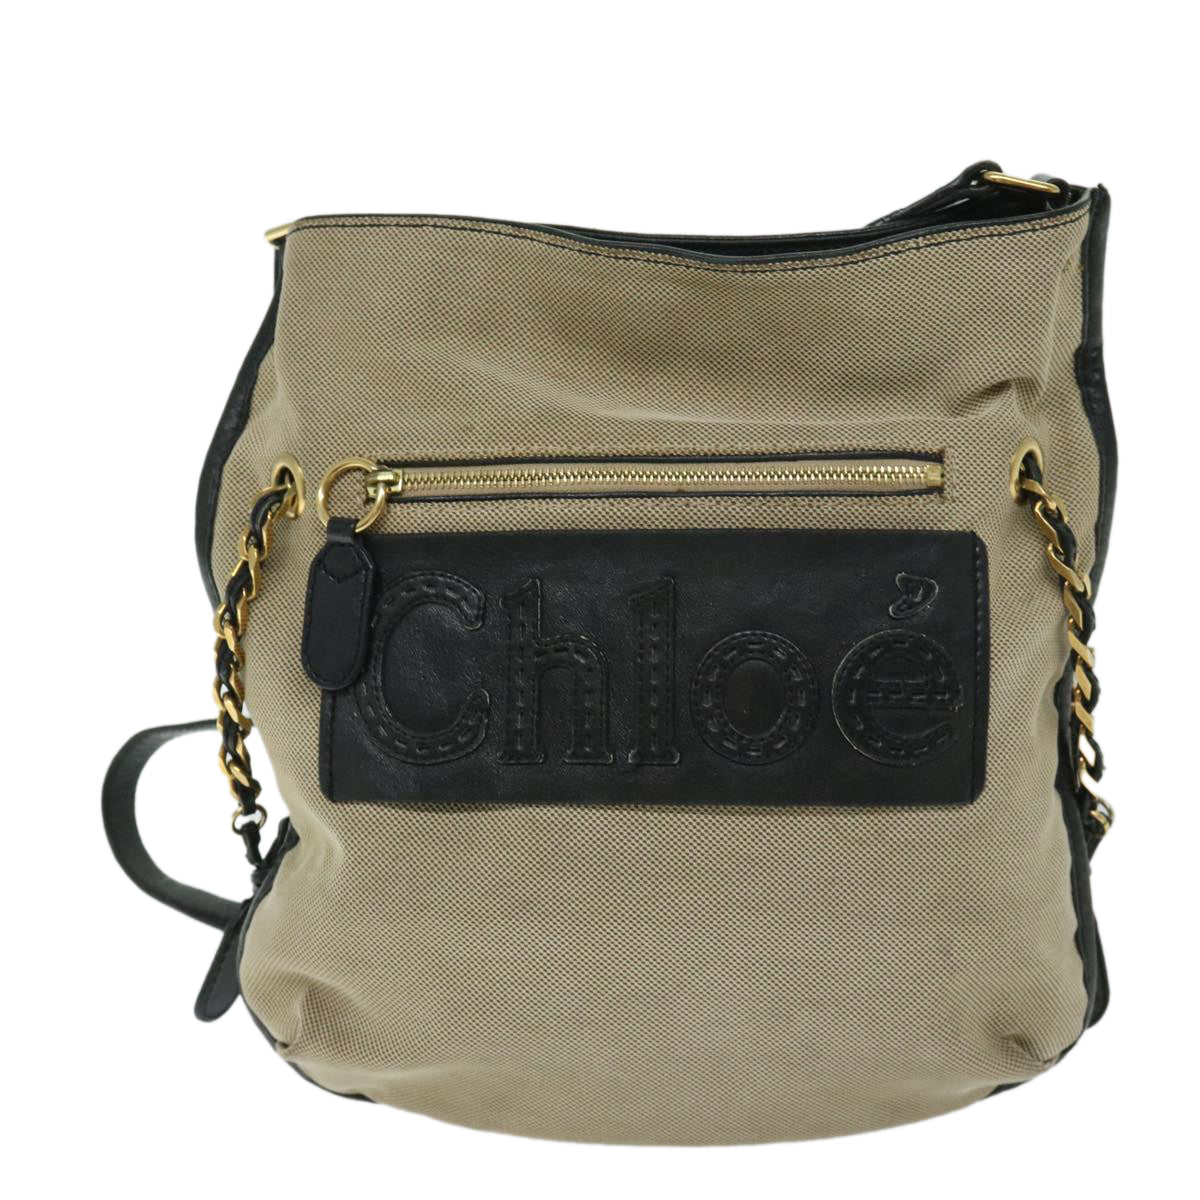 Chloe Harley Shoulder Bag Canvas Leather Beige Black Auth 67269 - 0